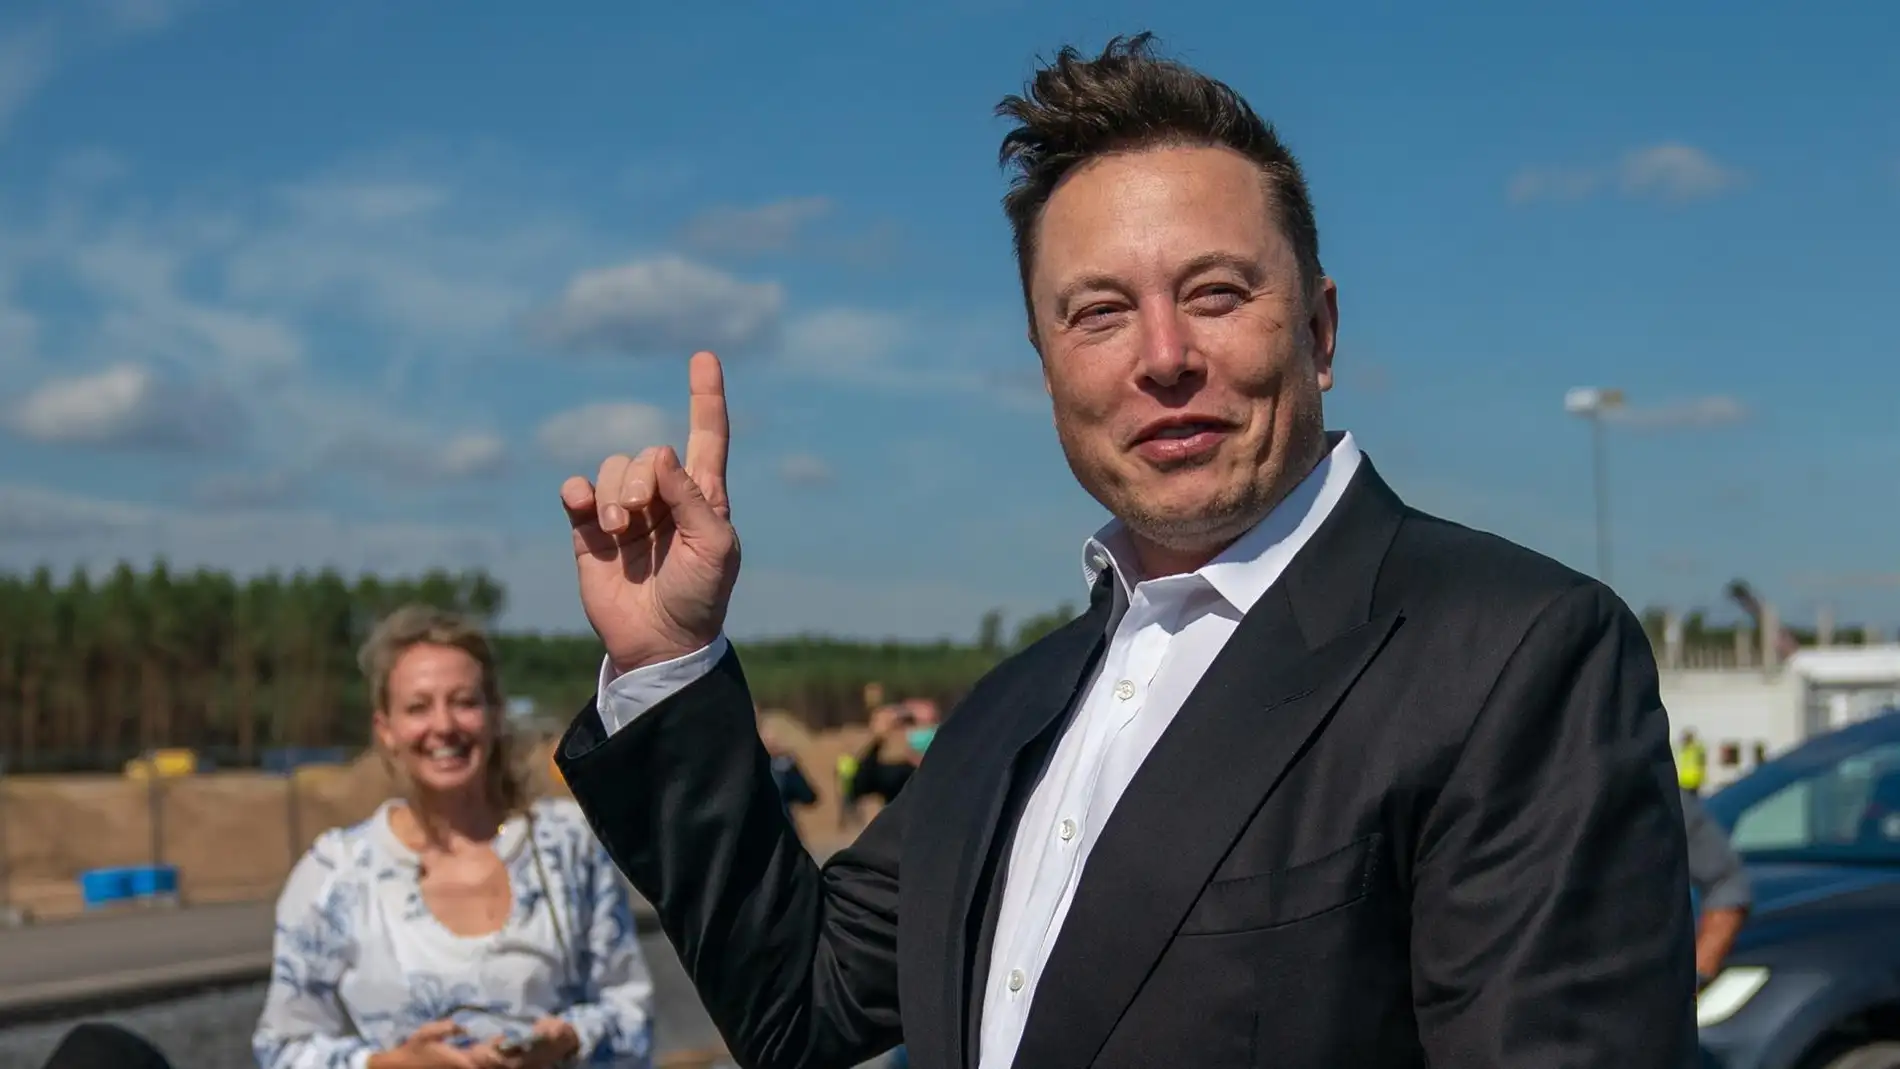 El empresario Elon Musk, en una fotografía de archivo. / Efe